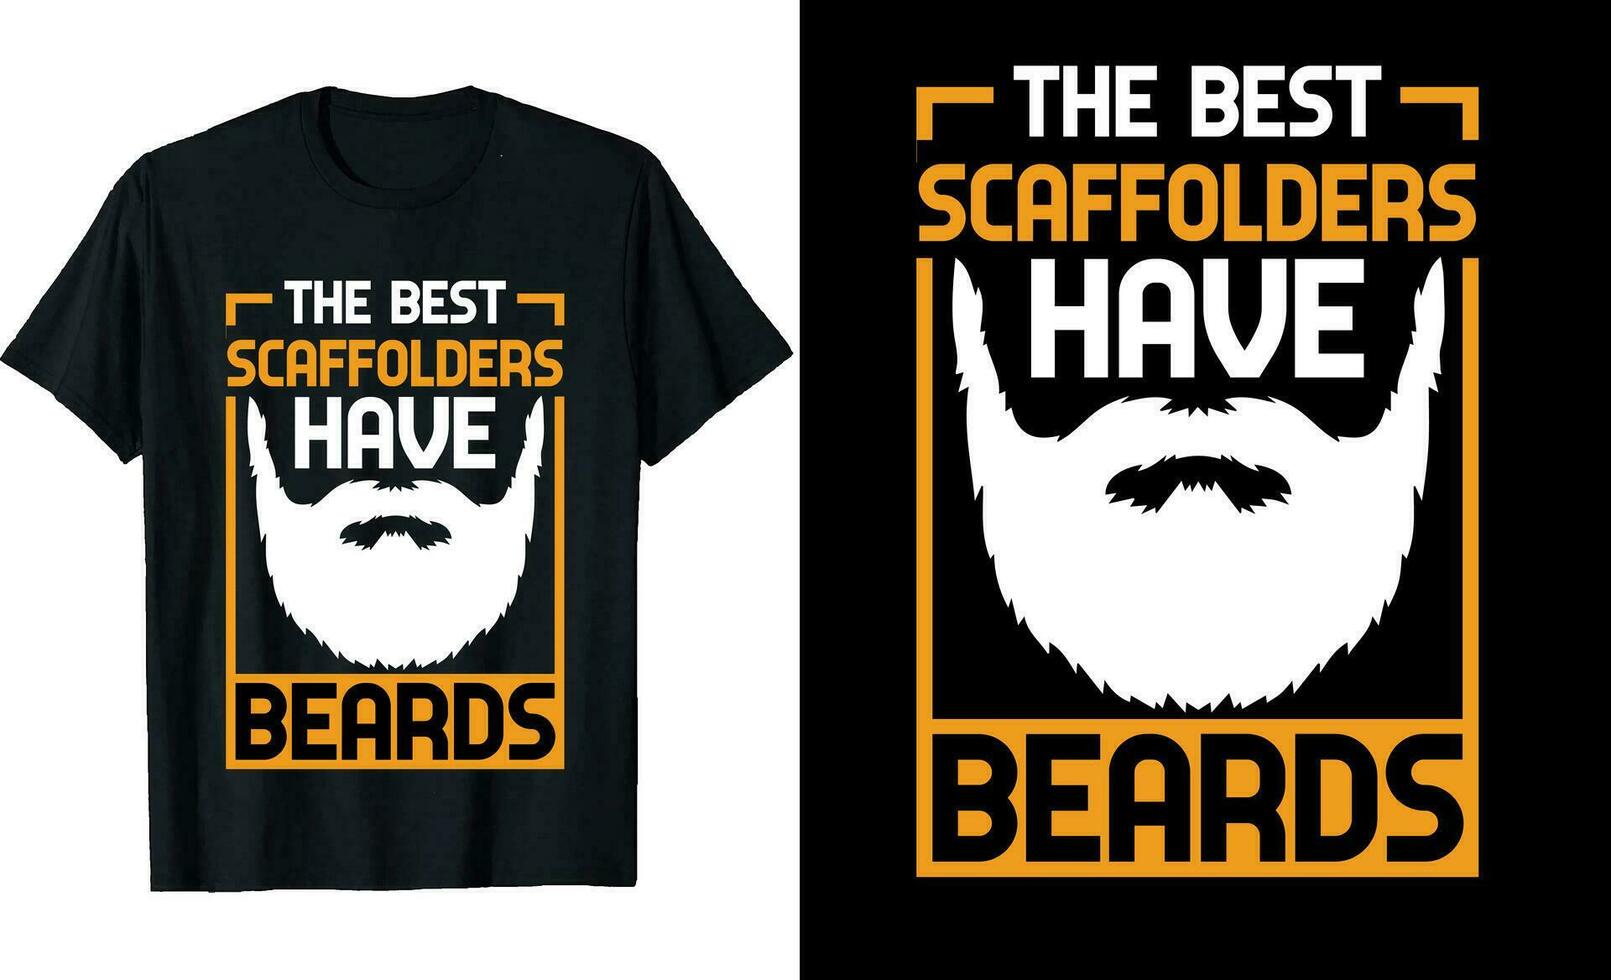 Best Scaffolders Have Beards Funny Scaffolders Long Sleeve T-Shirt or Scaffolders t shirt design or Beards t-shirt design vector